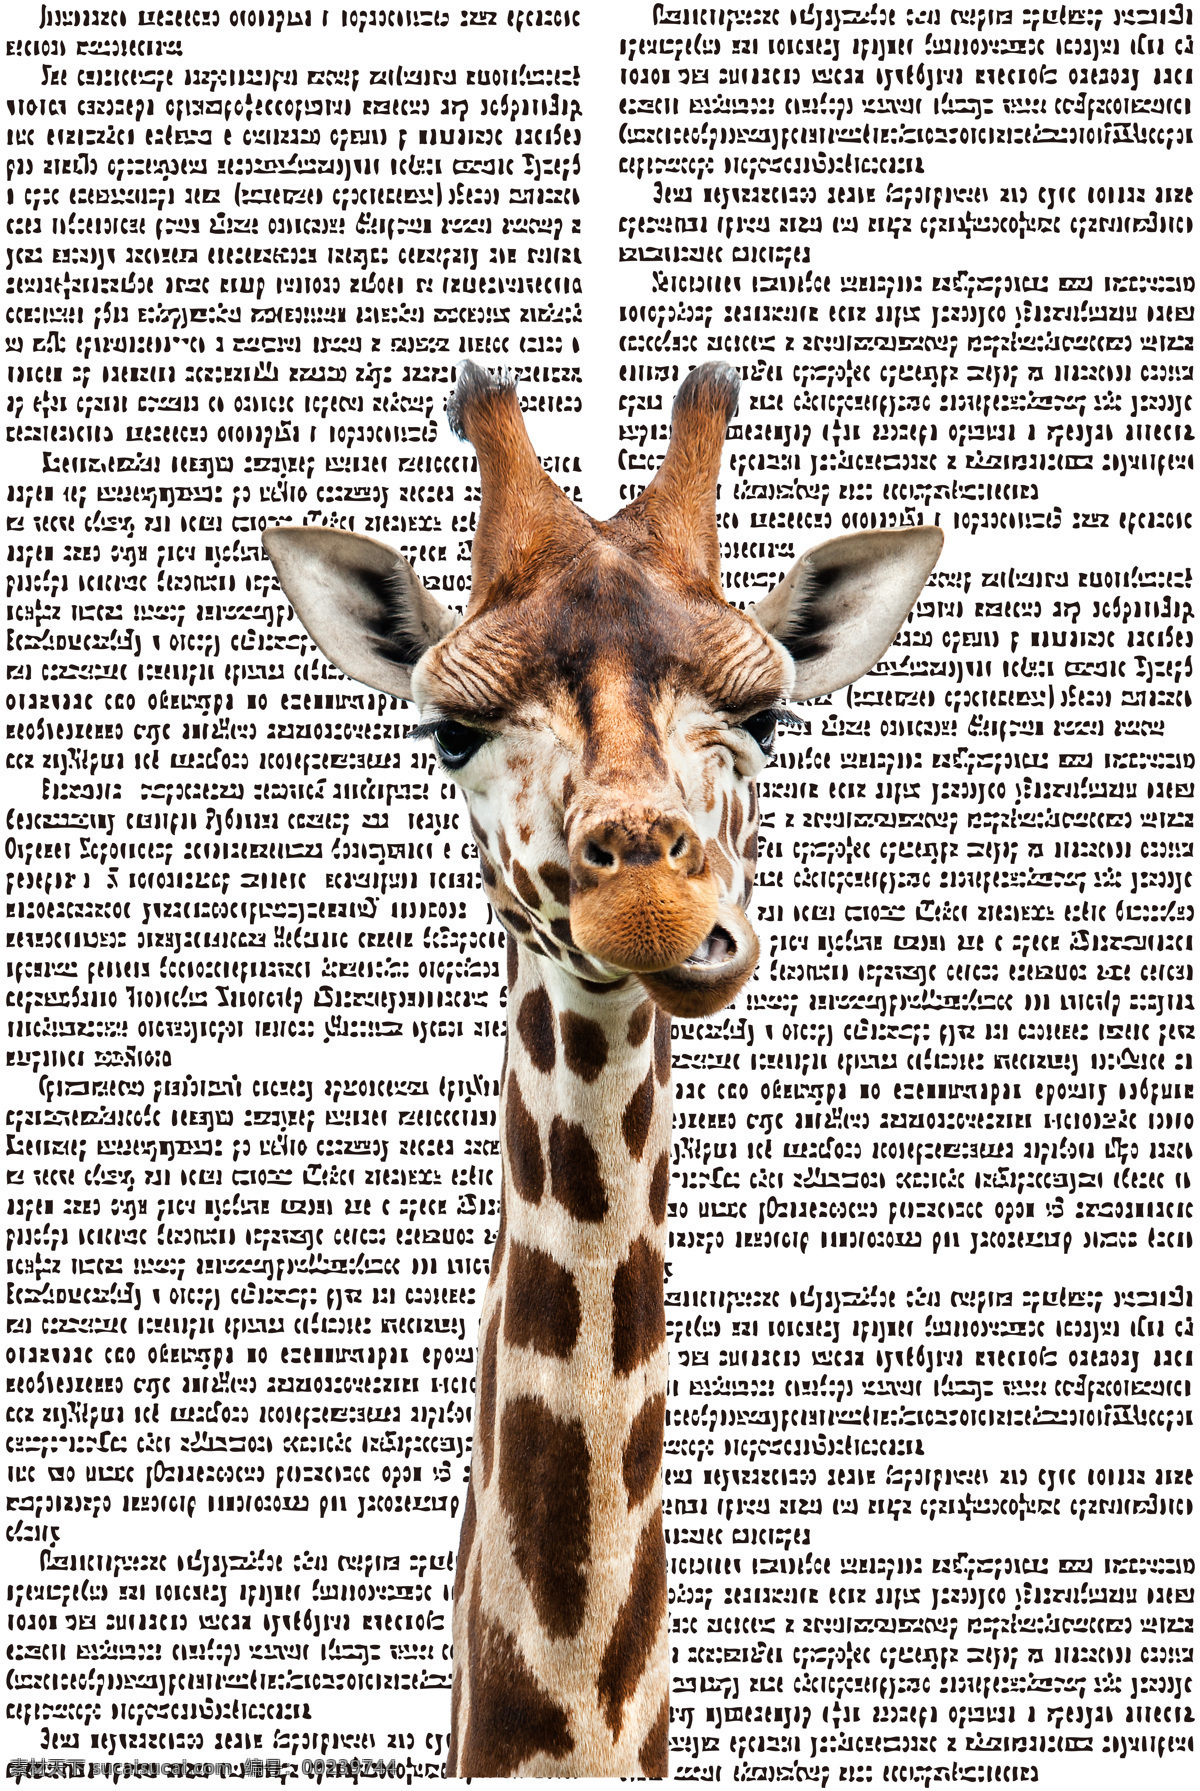 滑稽的长颈鹿 滑稽 长颈鹿 脸 长脖子 咀嚼 报纸素材 环境设计 无框画